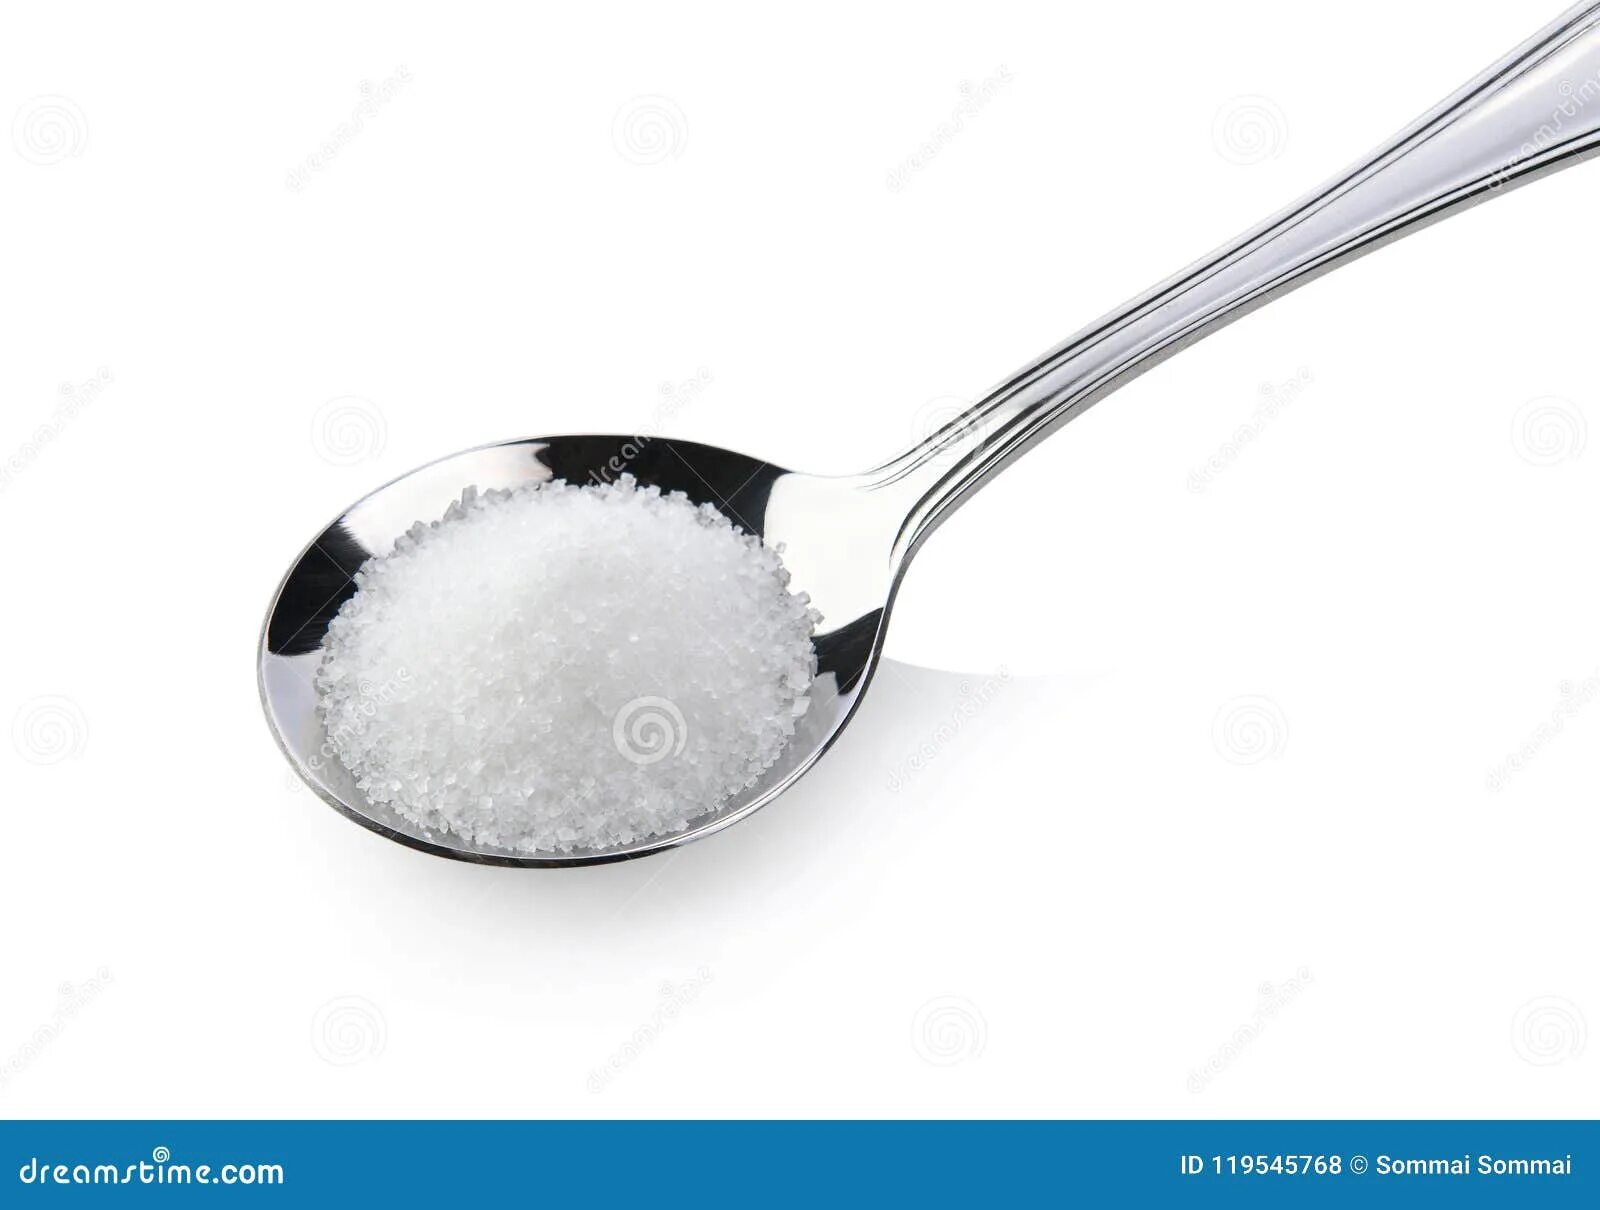 5 ч л сахар. Чайная ложка соли. Чайная ложка сахара. Ложка с солью на белом фоне. Пол чайной ложки соли.